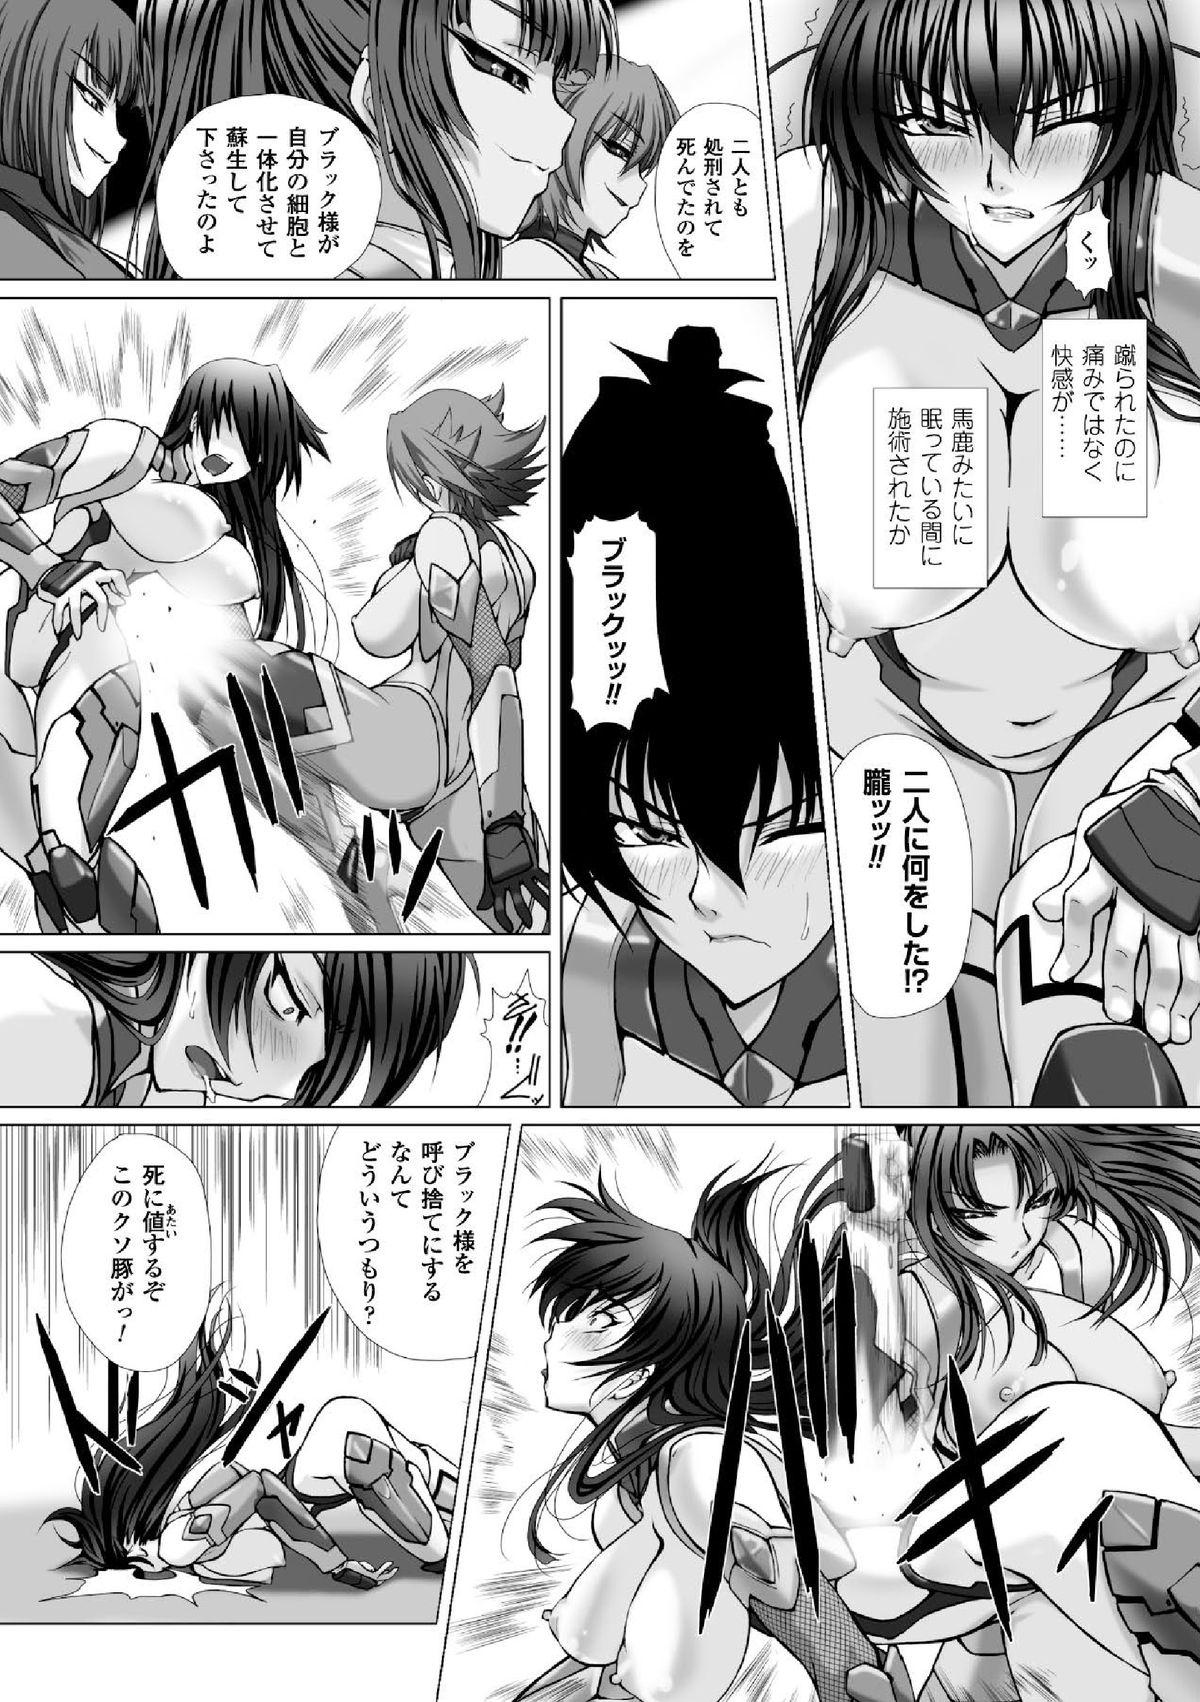 Skirt Megami Crisis 16 - Taimanin asagi Kangoku senkan Koutetsu no majo annerose Safado - Page 12